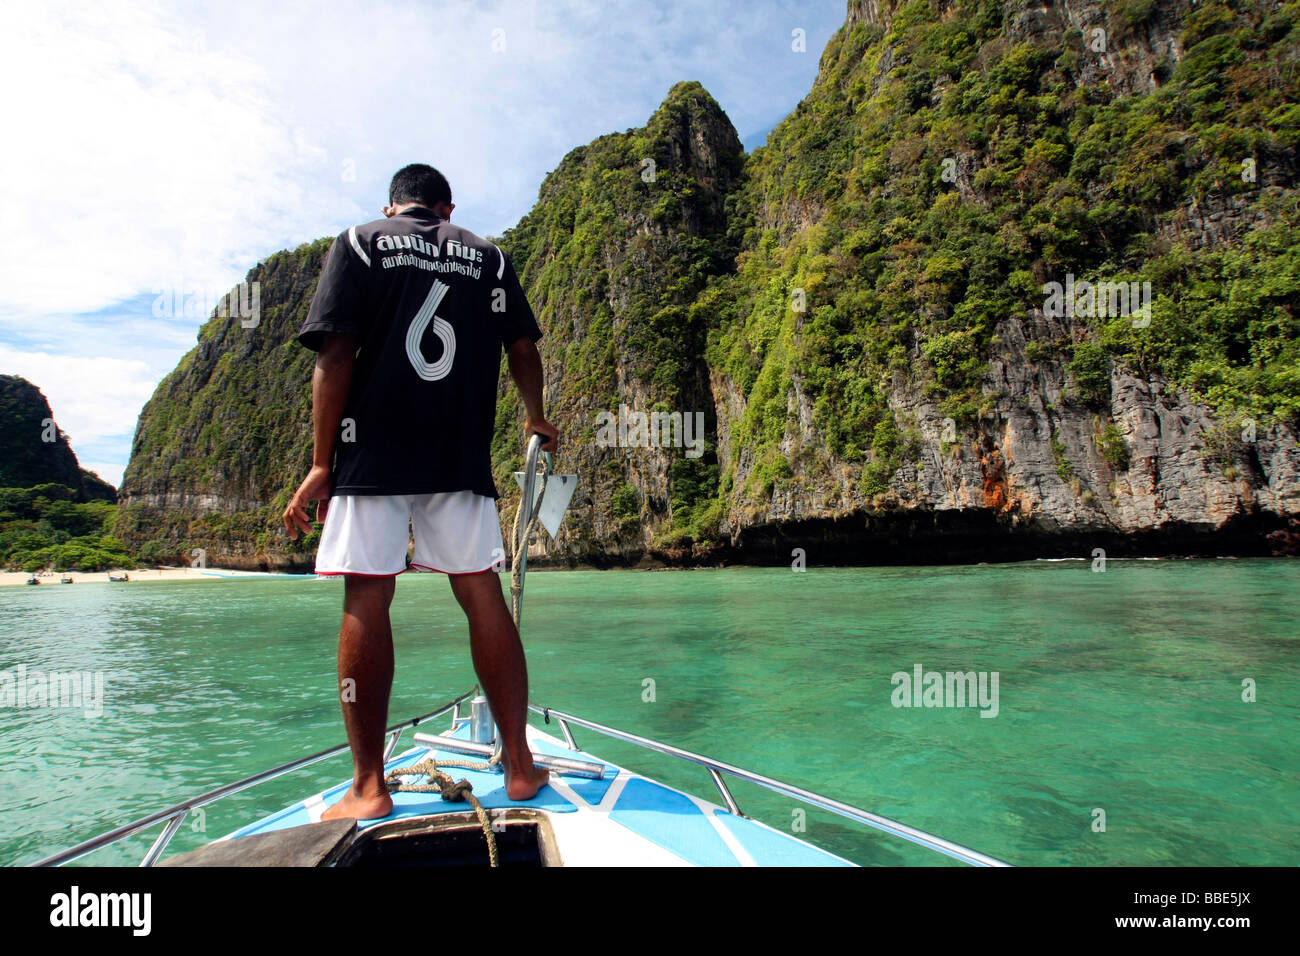 El hombre en el barco, Maya Bay, isla de Phi Phi, Phuket, Tailandia, Asia Foto de stock